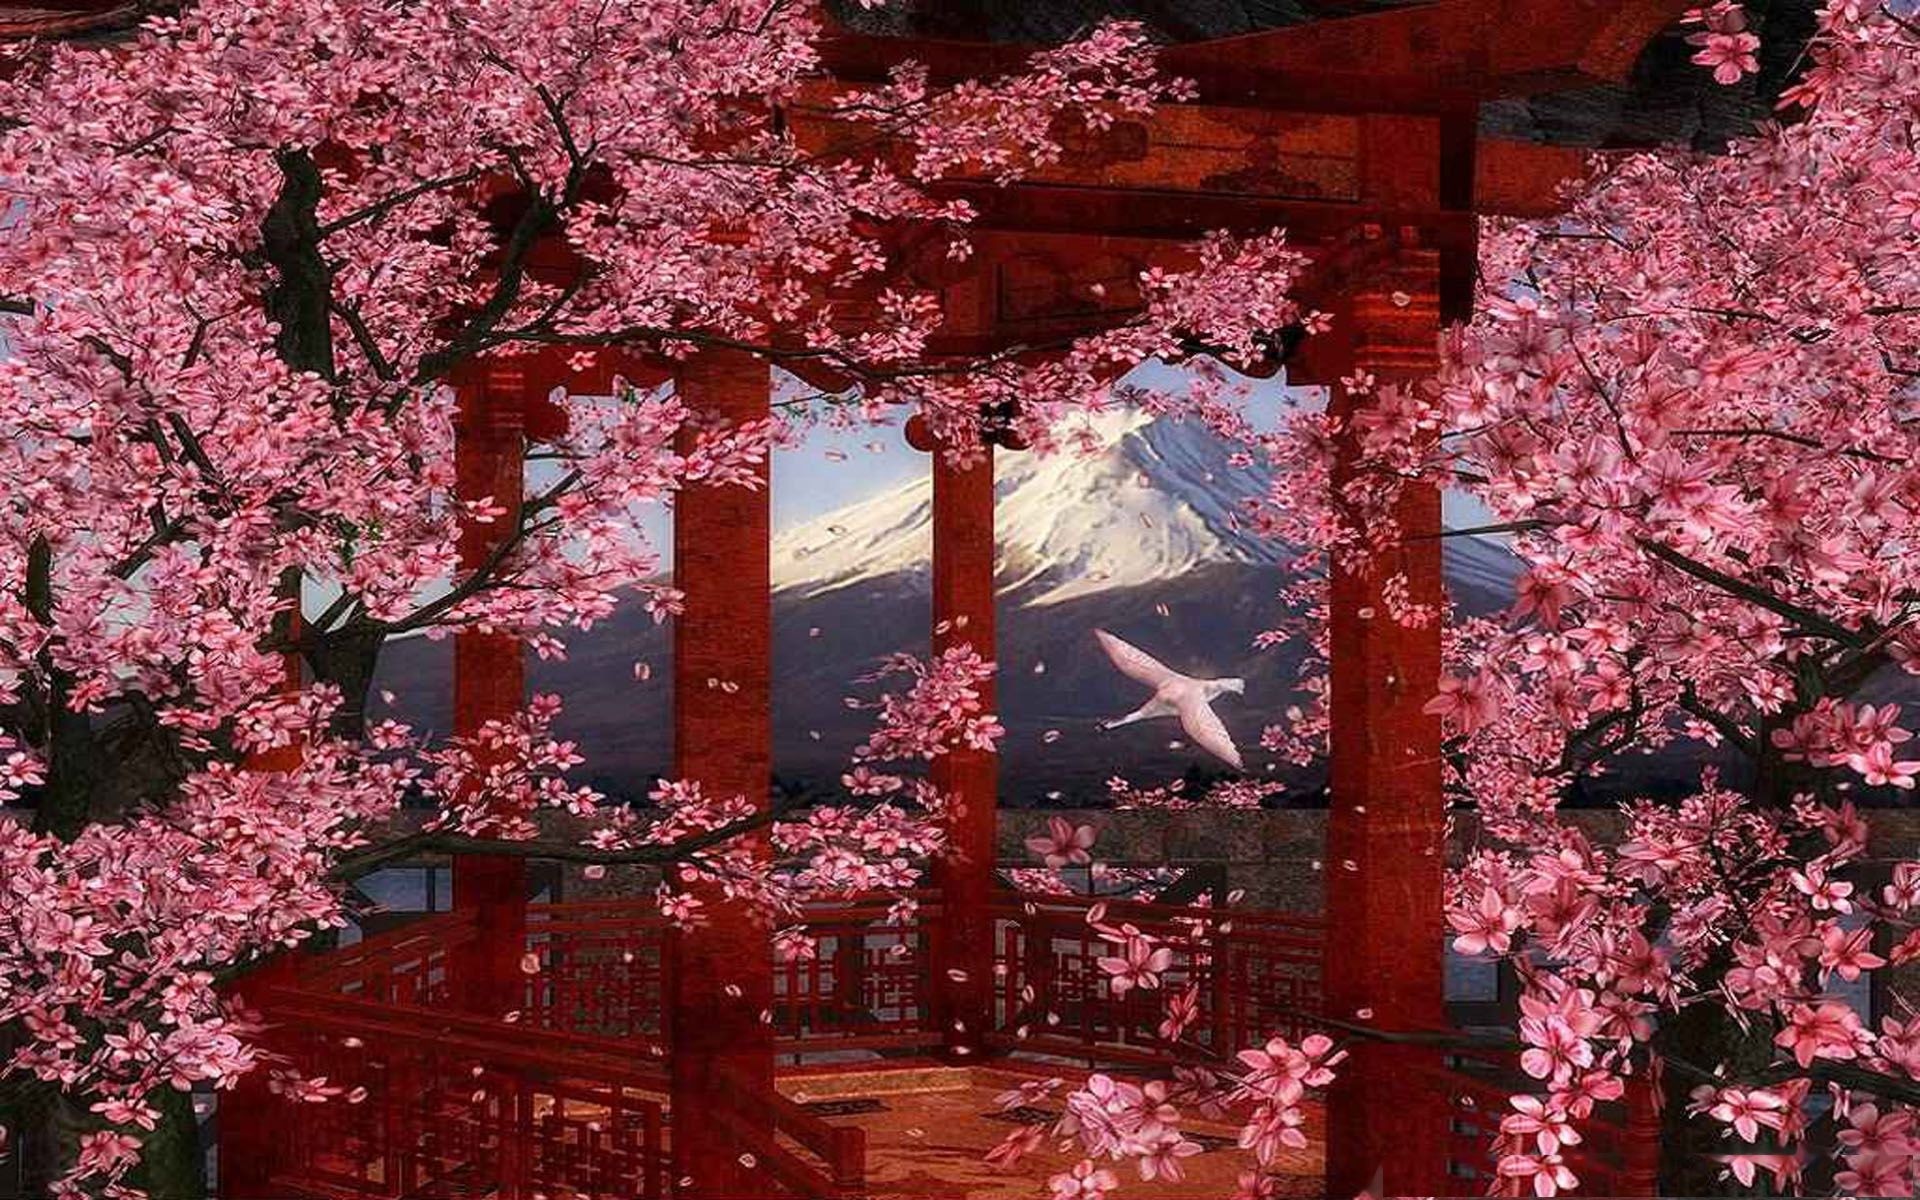 цветущая сакура на фоне гор